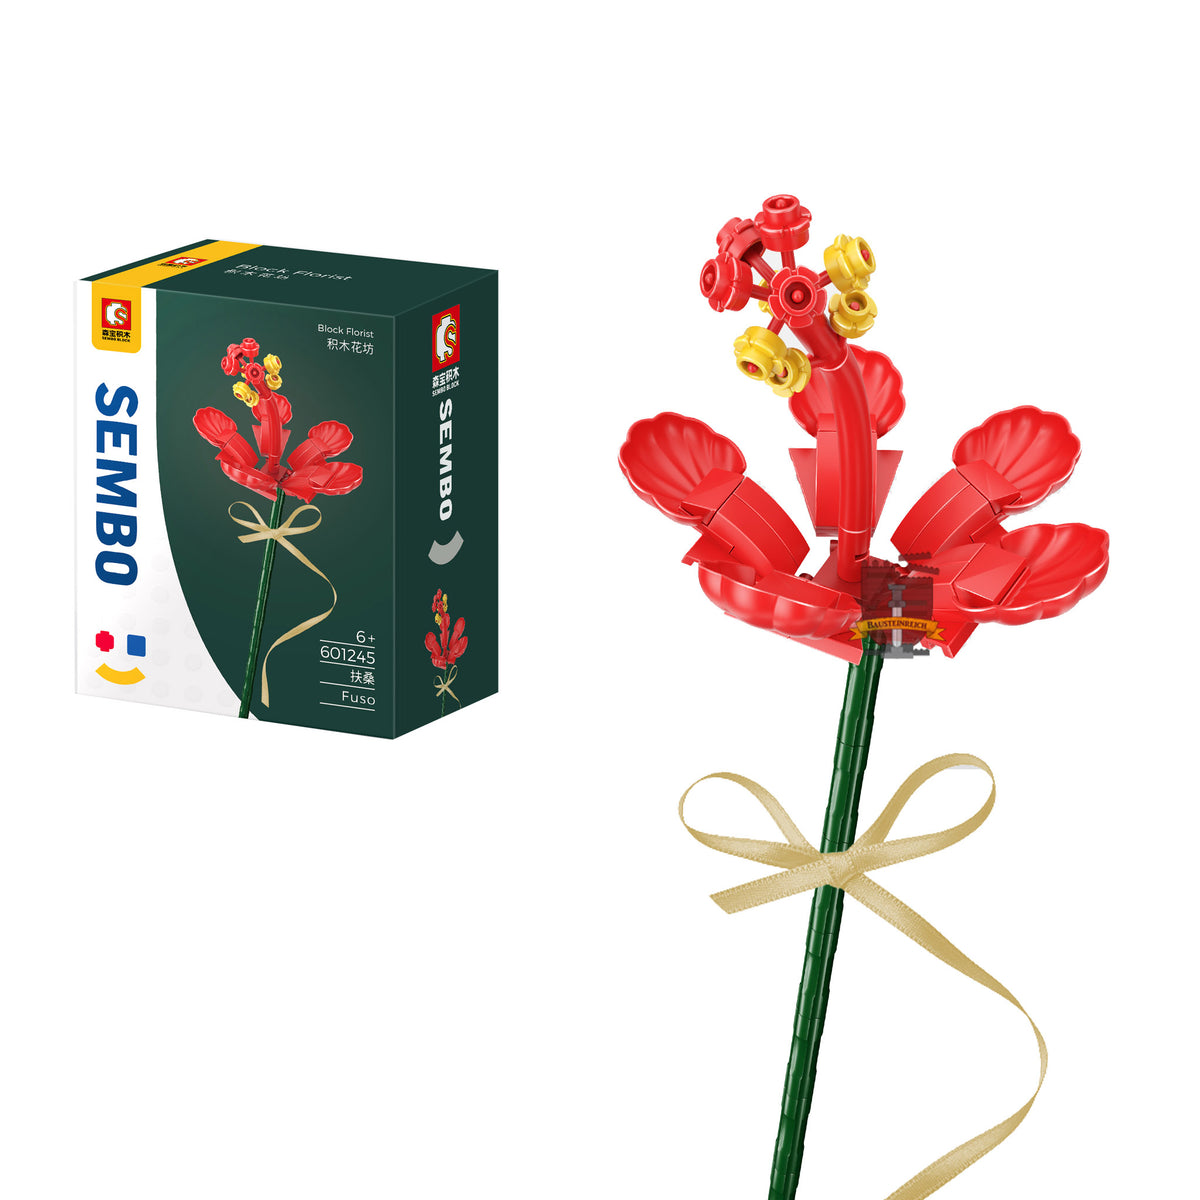 601245 - rote Fuso Blume (Sembo)